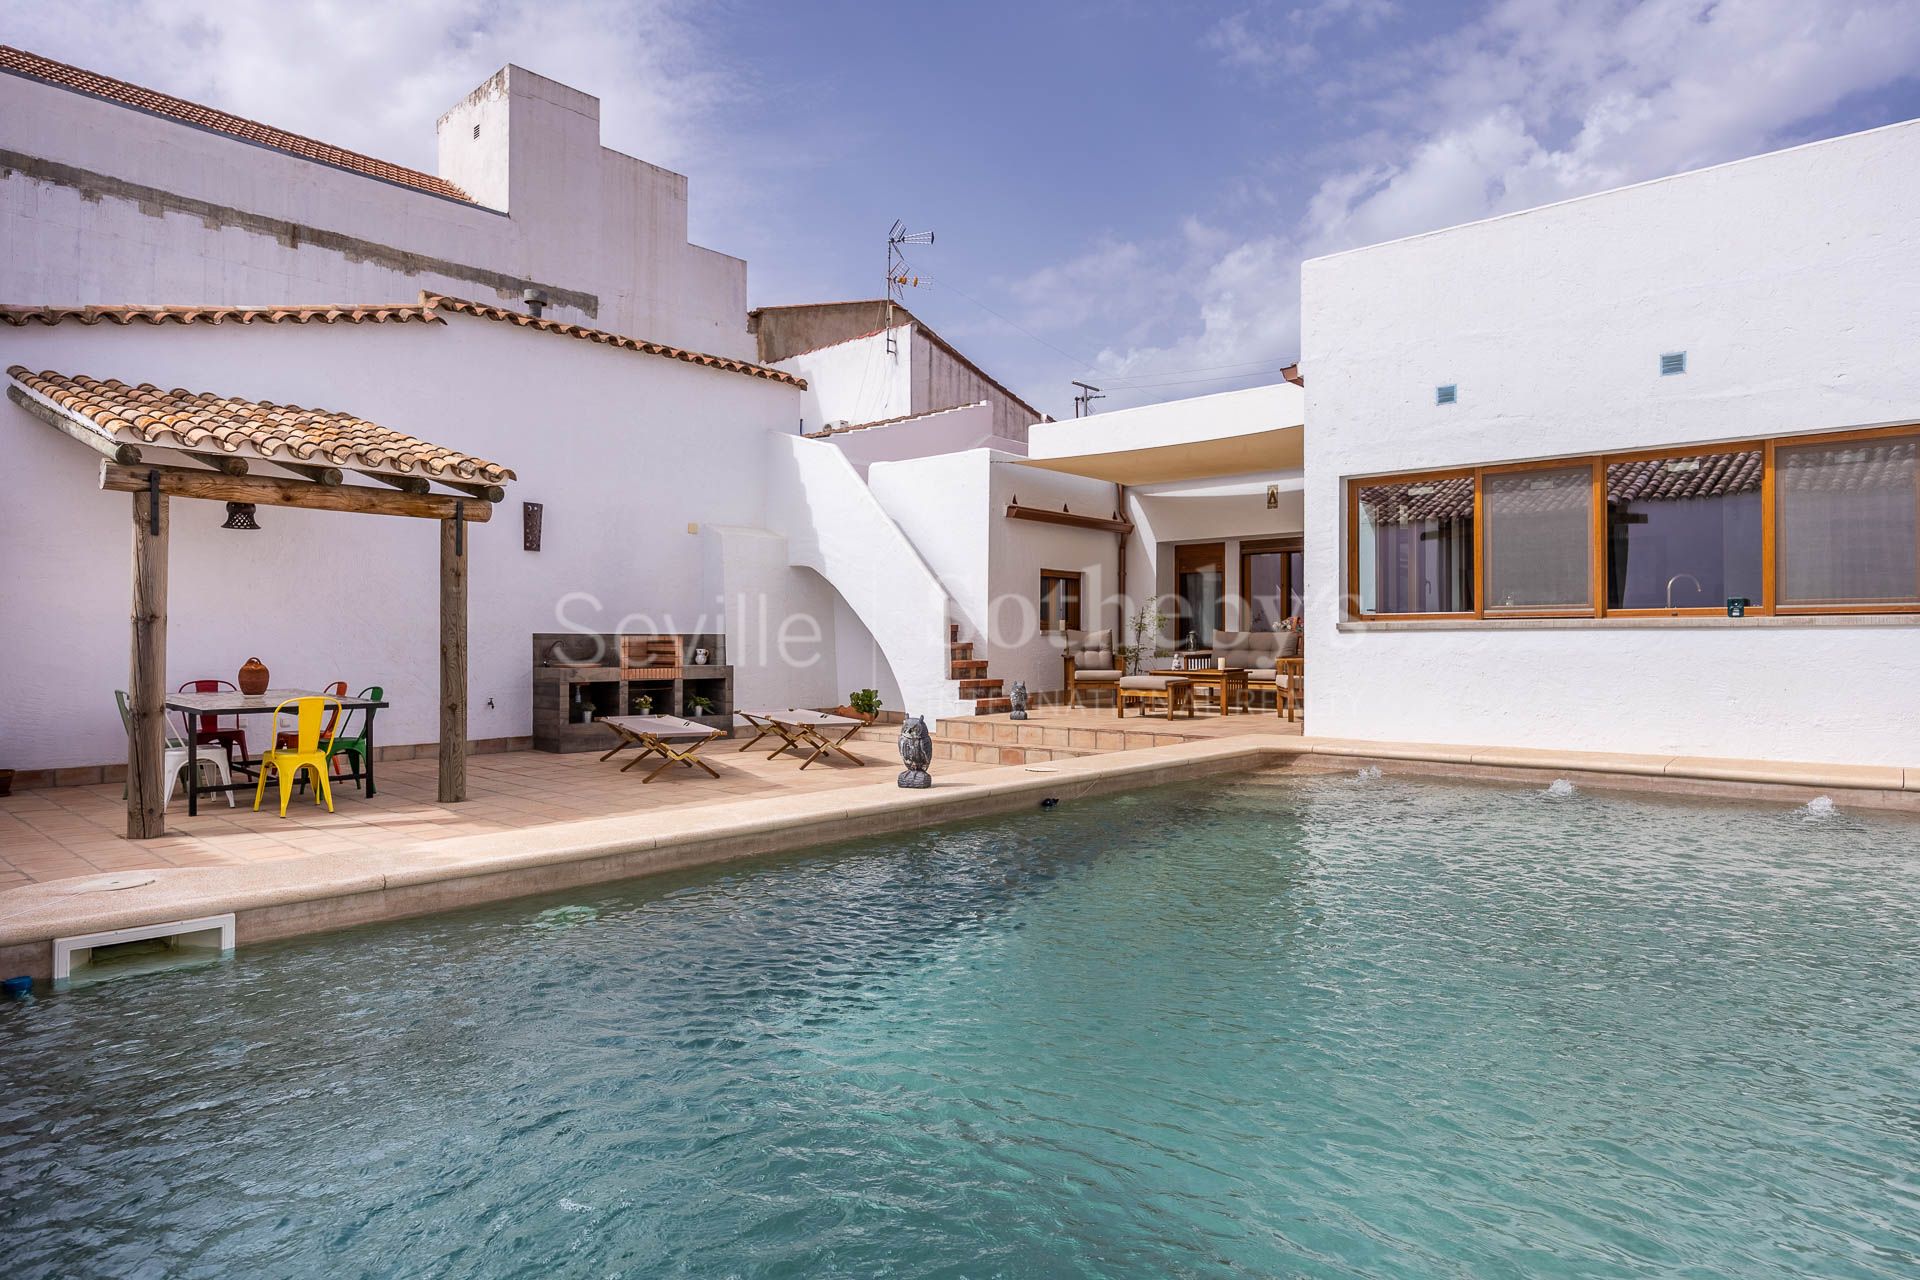 Exclusiva vivienda unifamiliar recién reformada en Cuenca Minera de Huelva con garaje y piscina.